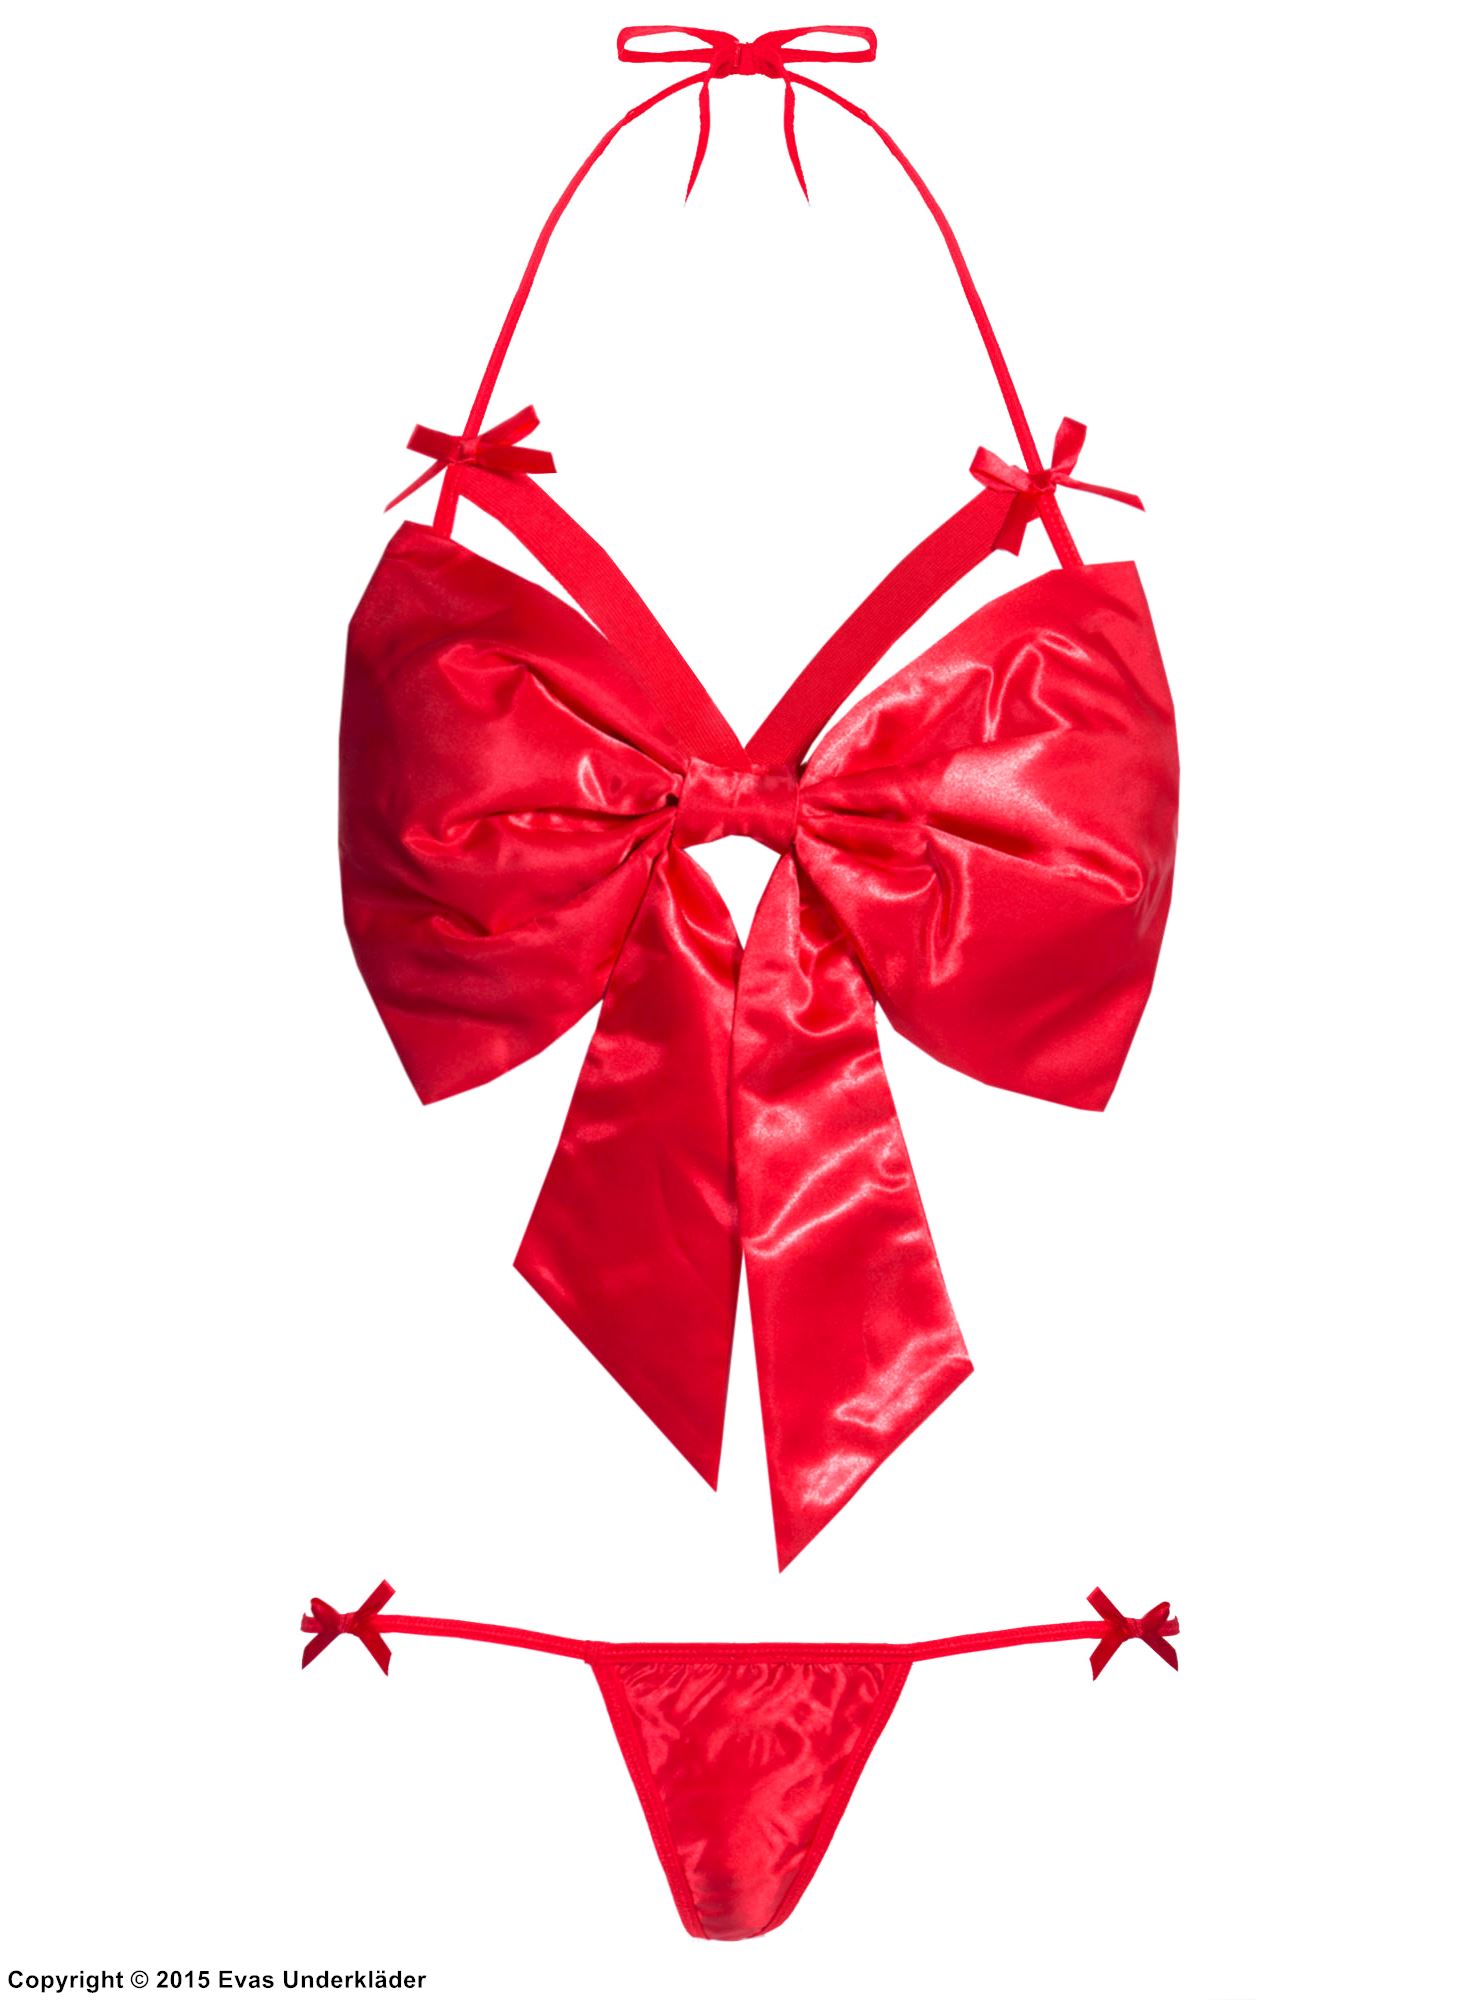 Playful lingerie set, satin, big bow, straps over bust